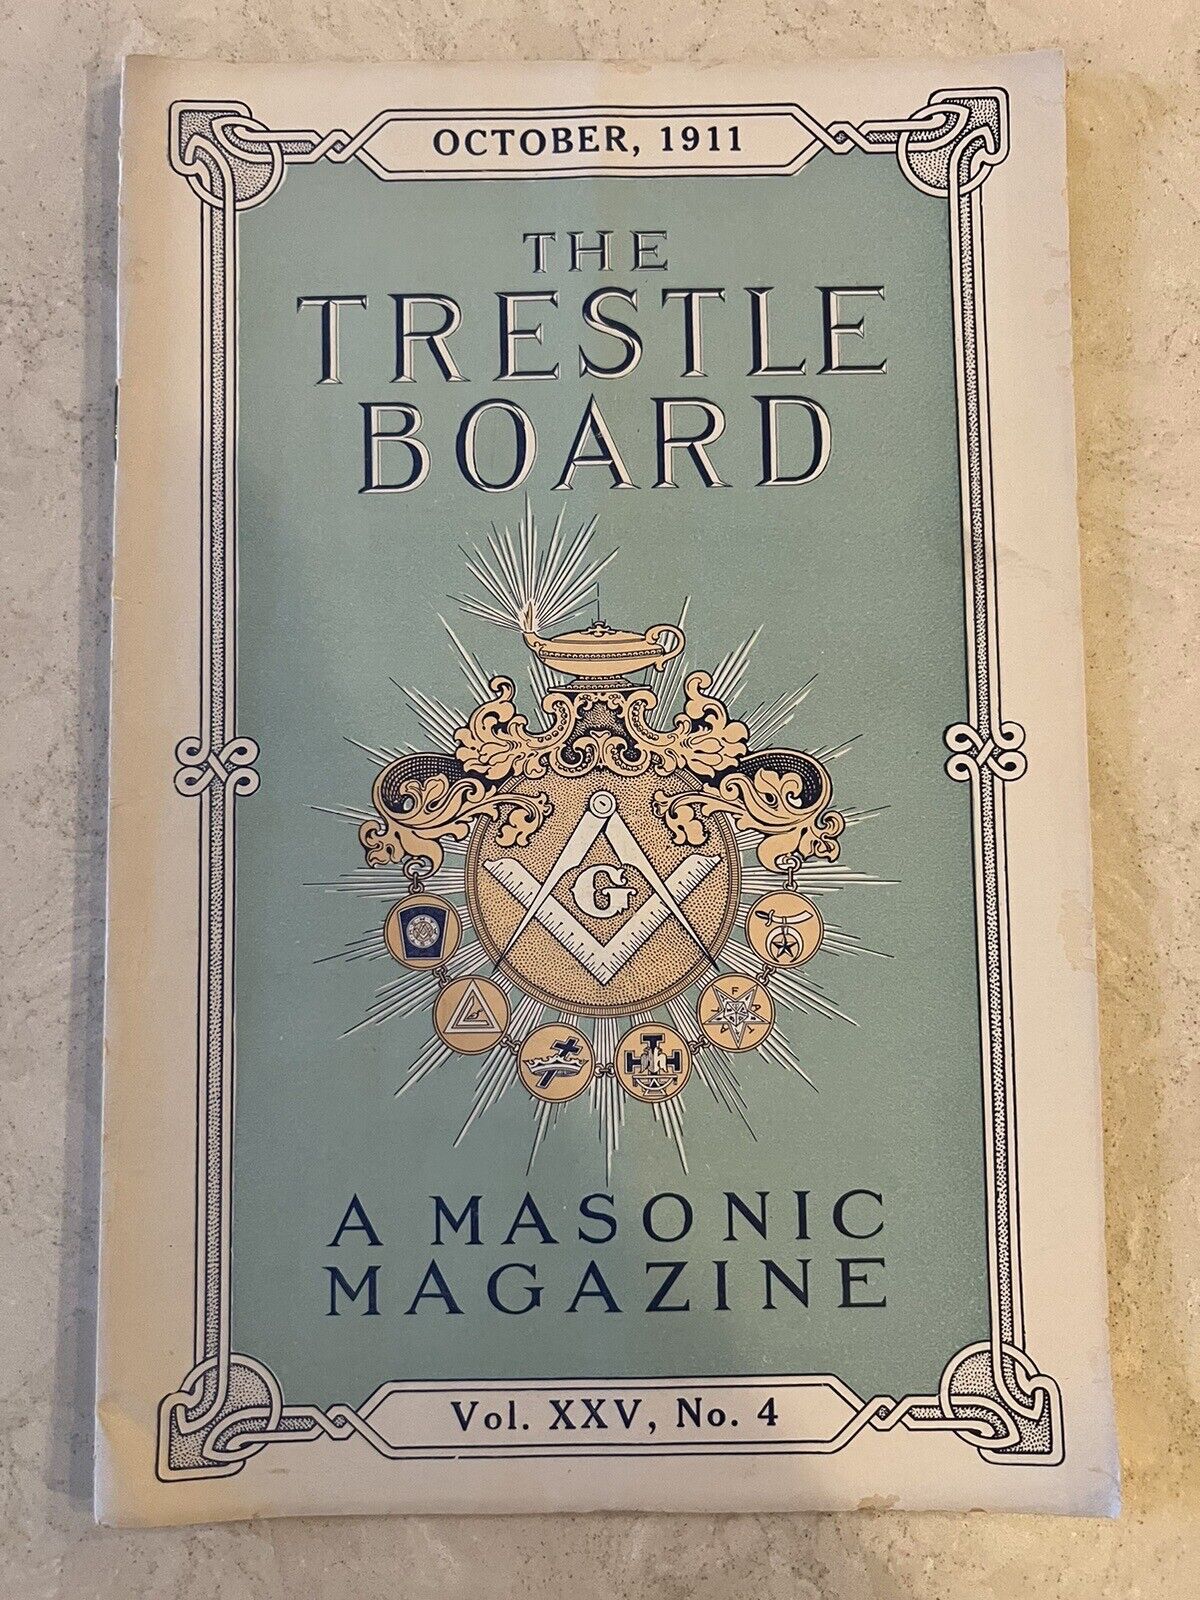 The Trestle Board Masonic Magazine October 1911 Freemasons